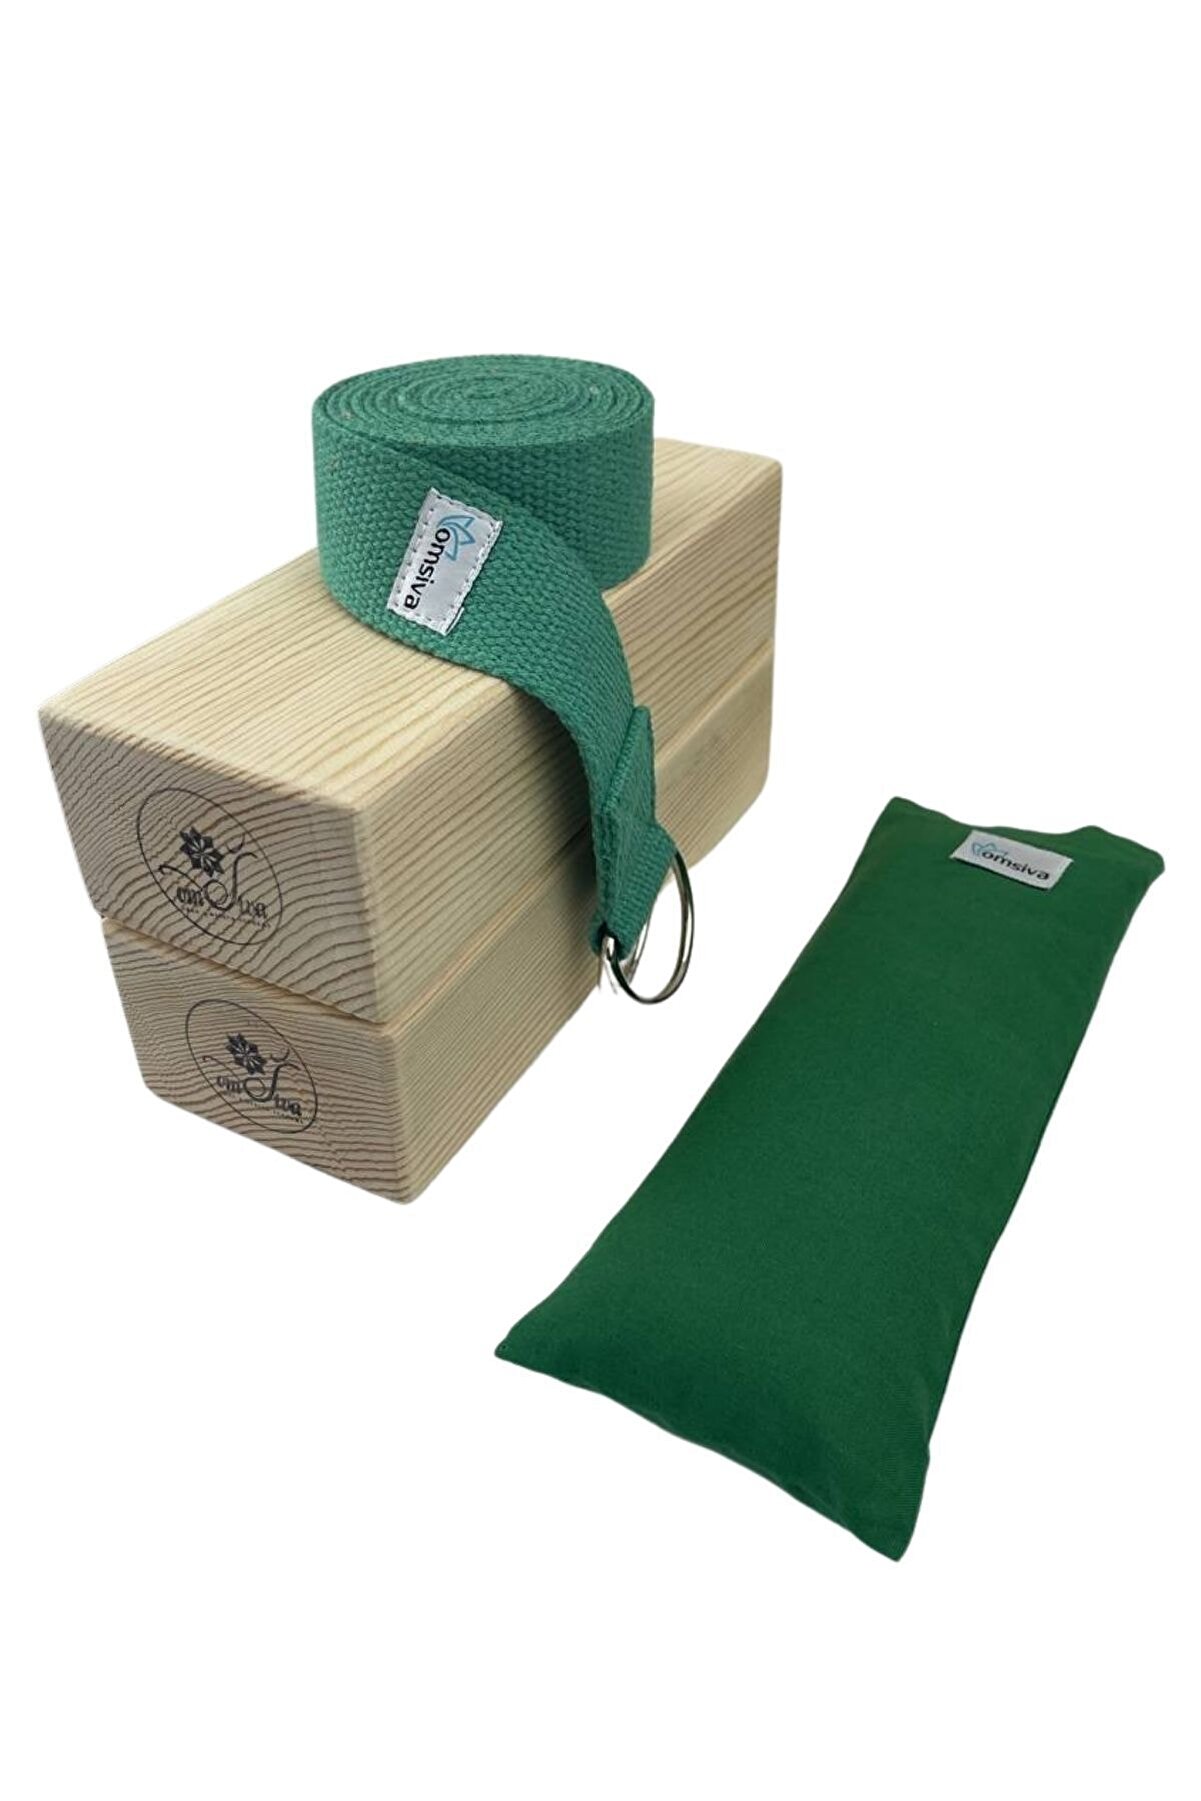 OmSiva Yoga Set Yeşil 2 Adet Blok Çift Katlı Yıkanabilir Lavantalı Yoga Göz Yastığı Yoga Kemeri